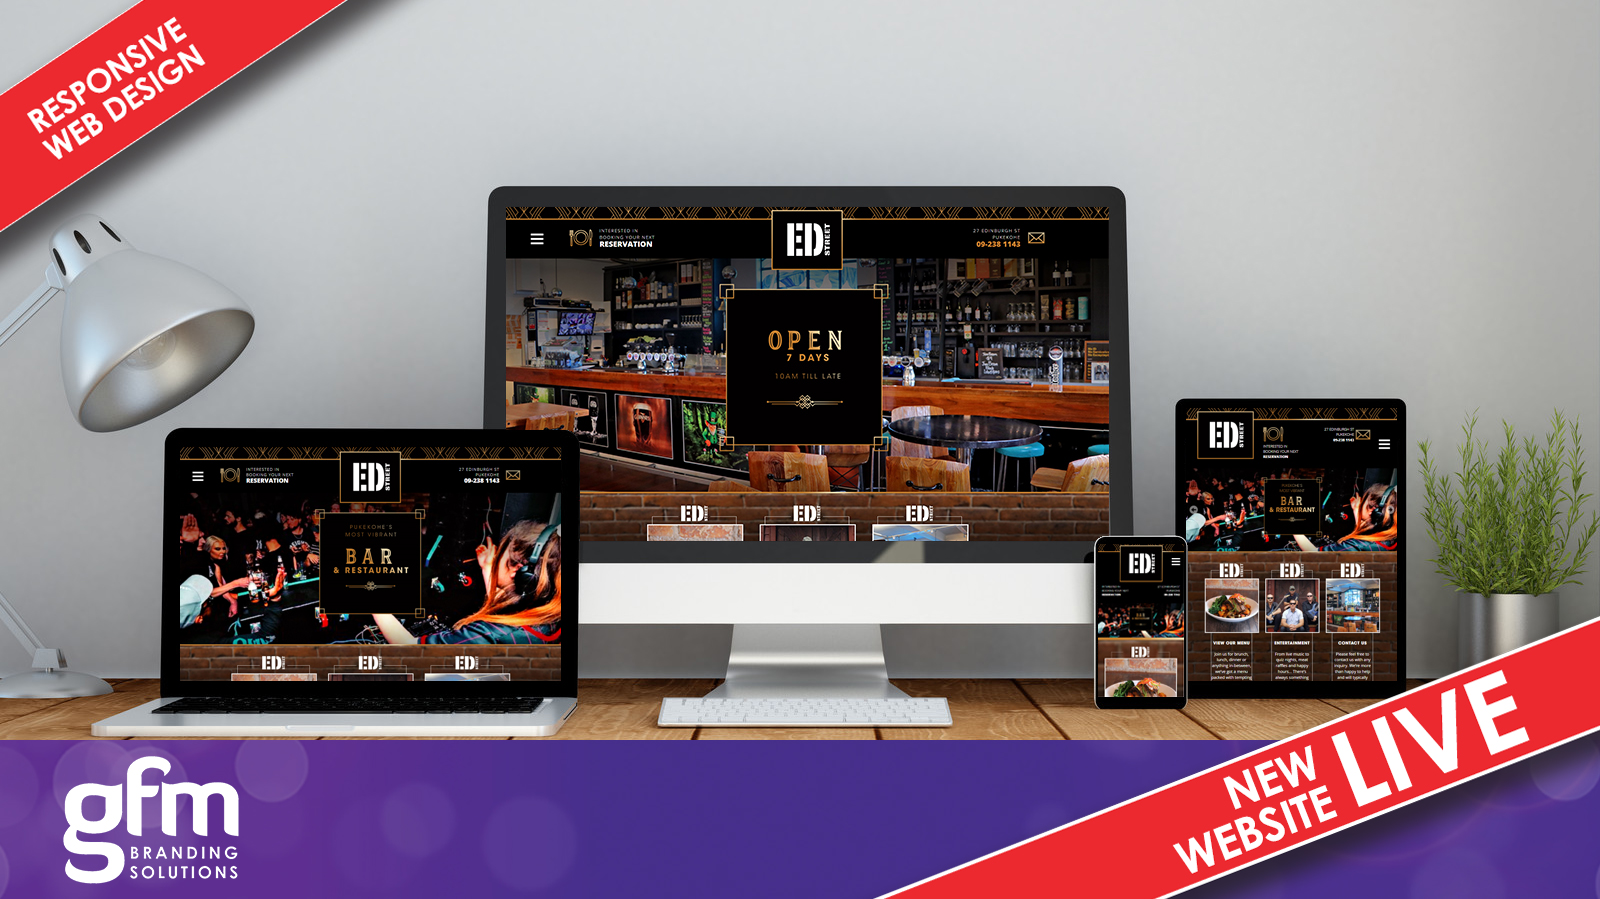 Ed Street Bar fully responsive website design on multiple screens